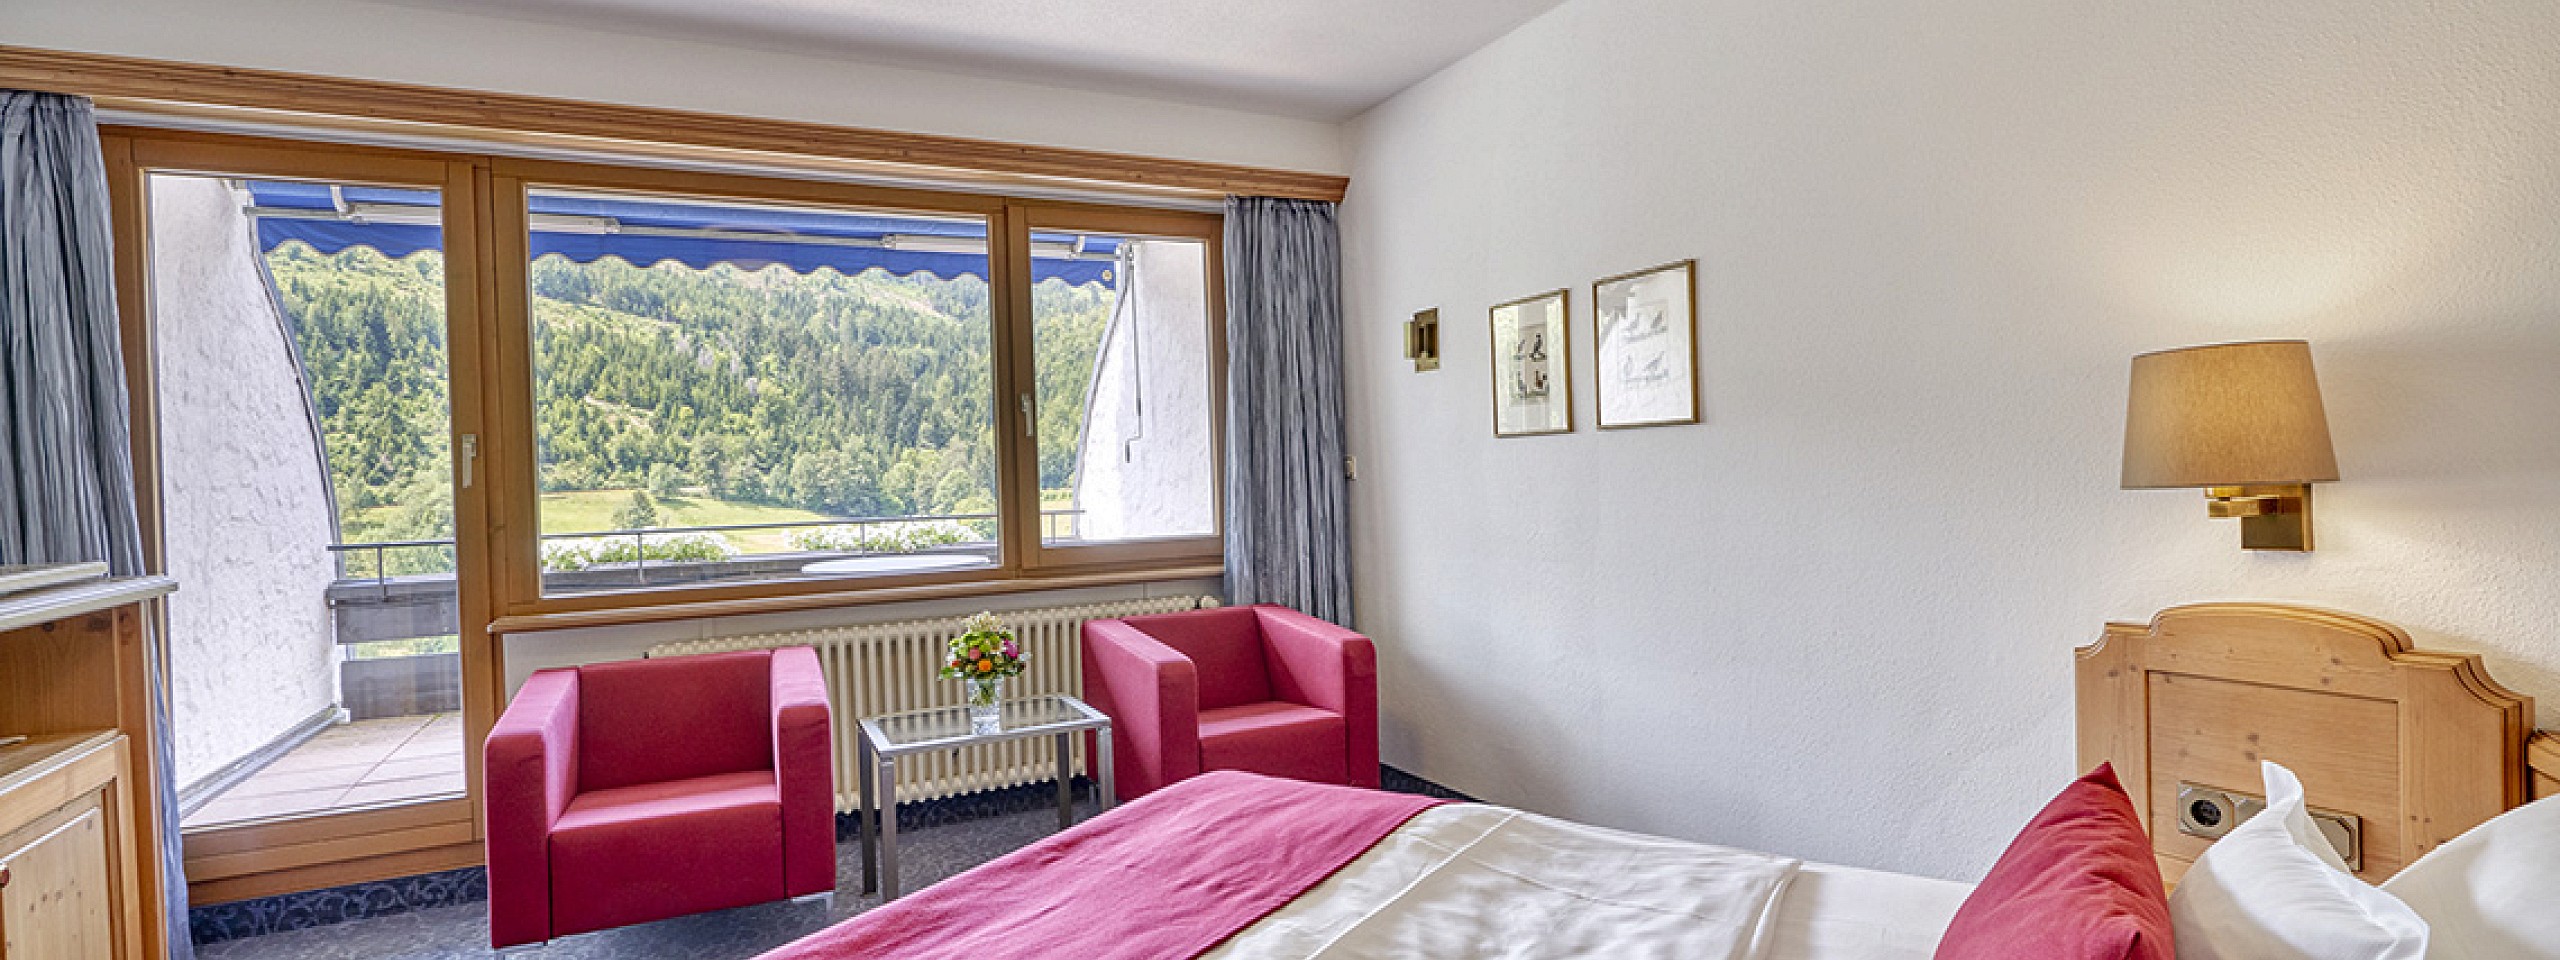 Hotelzimmer im Schwarzwald mit großem Bett und zwei roten Sesseln vor großem Fenster.